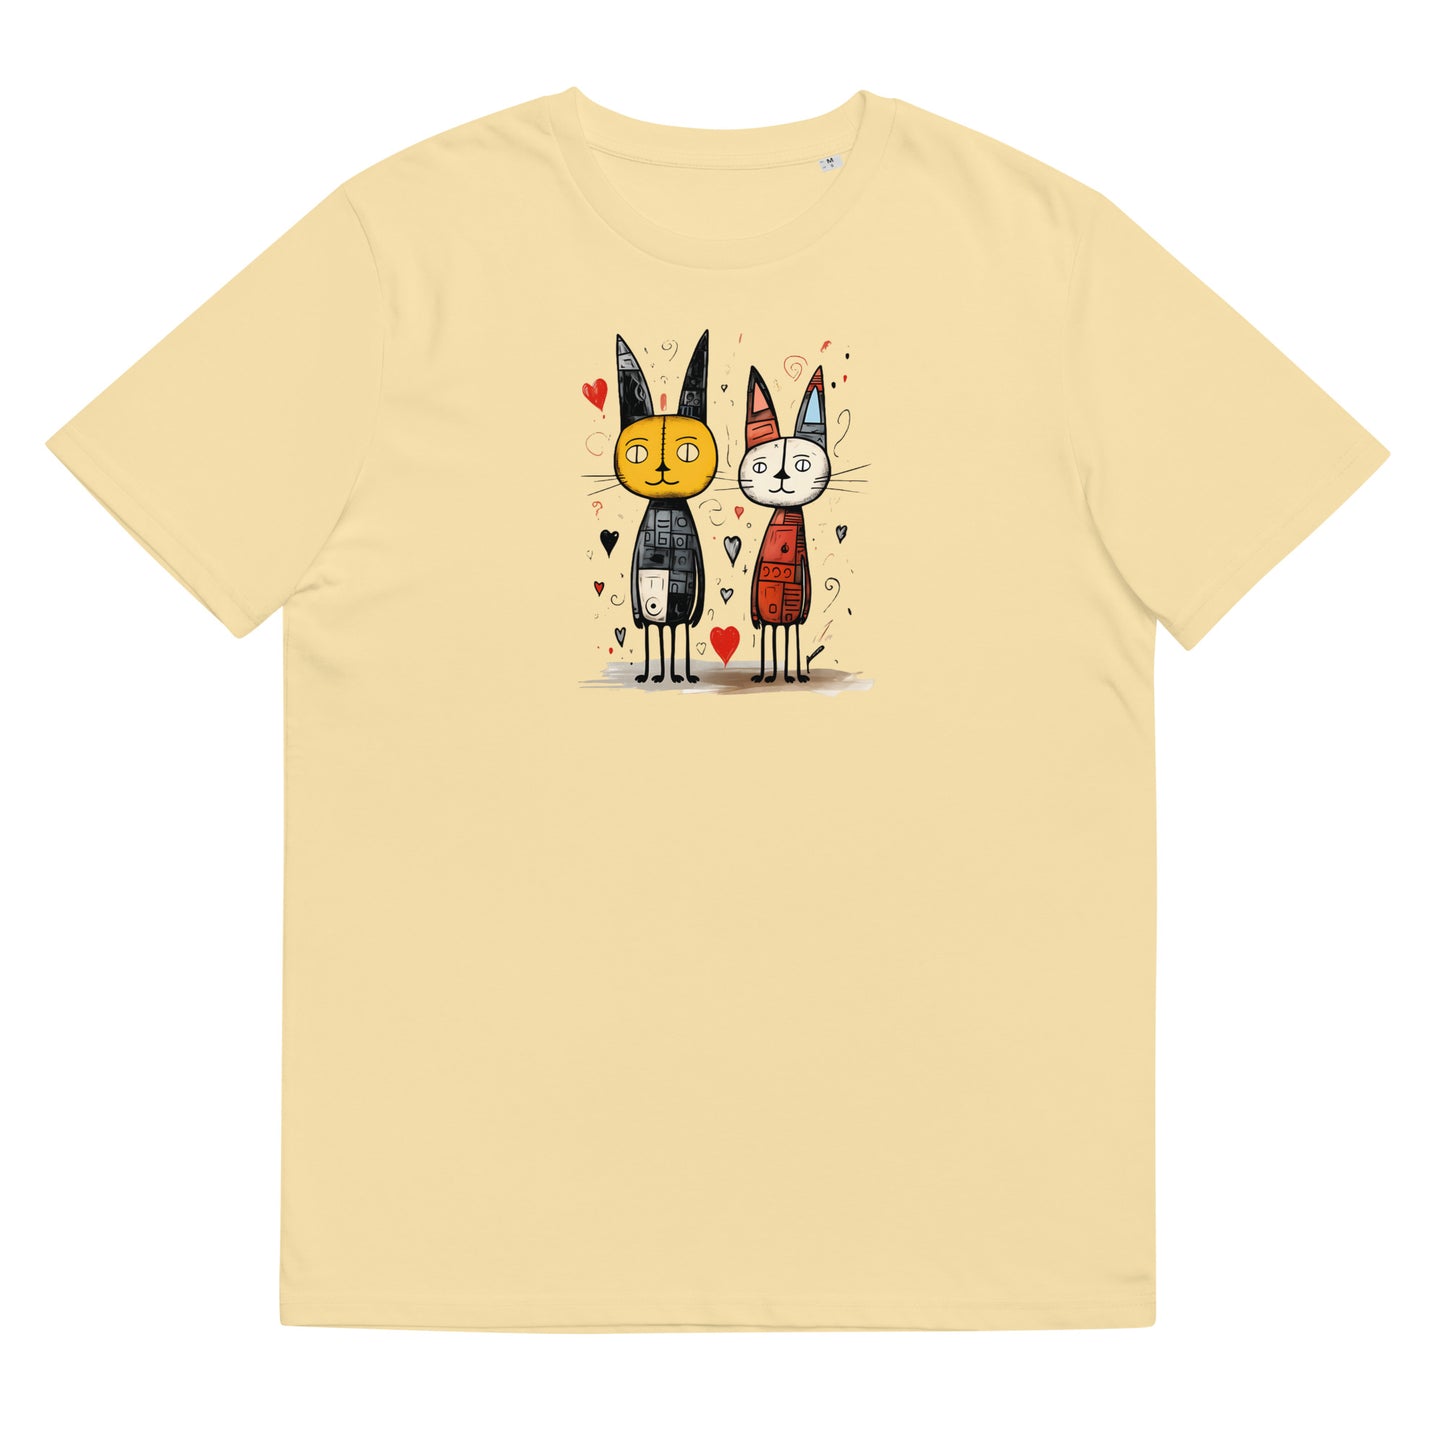 Organic cotton unisex t-shirt: two long-eared cats